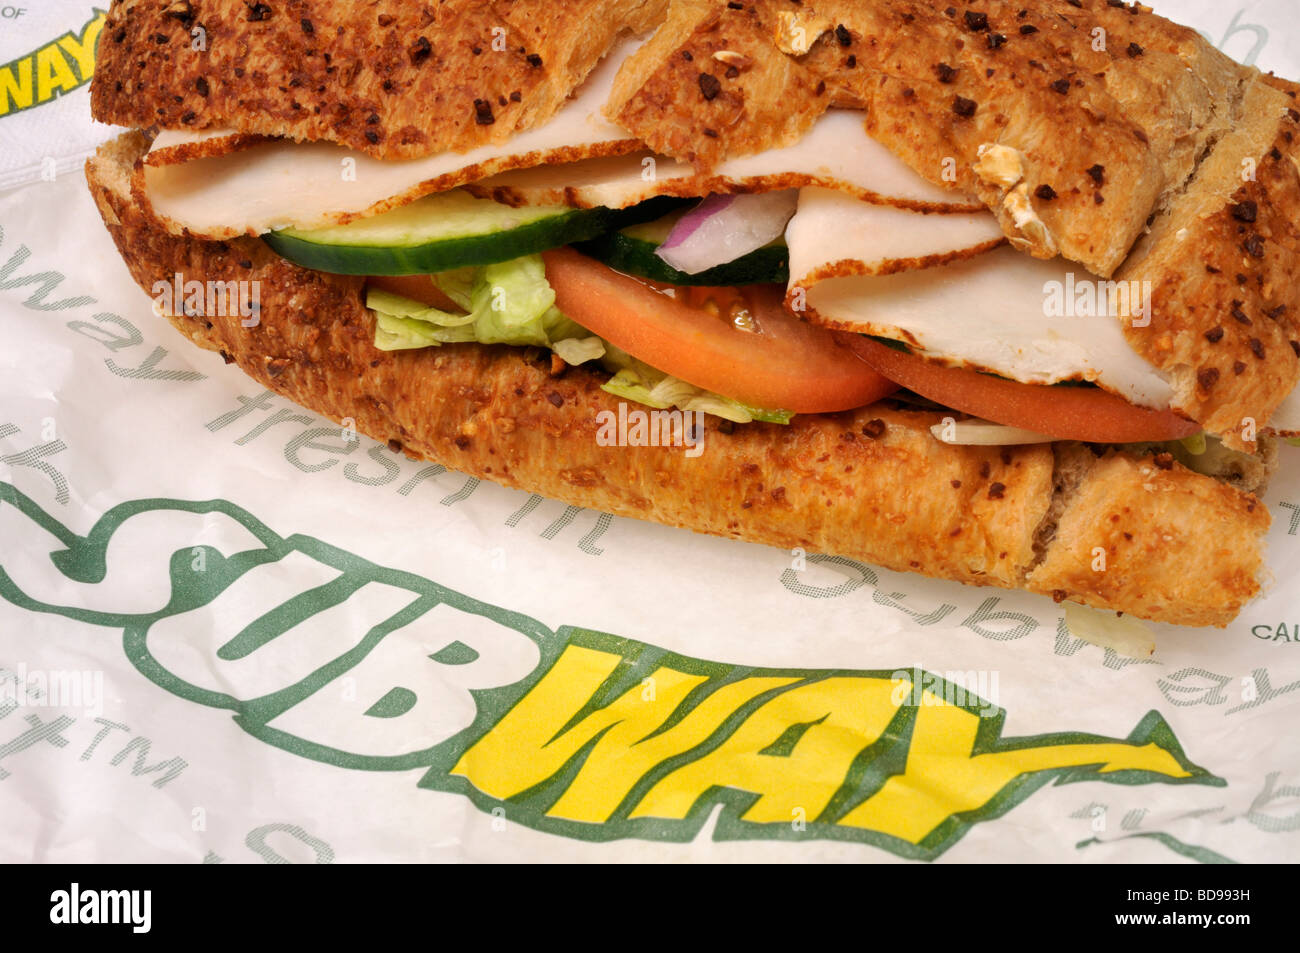 Alla metropolitana la Turchia sub sandwich sul wrapper con il logo della metropolitana NEGLI STATI UNITI. Foto Stock